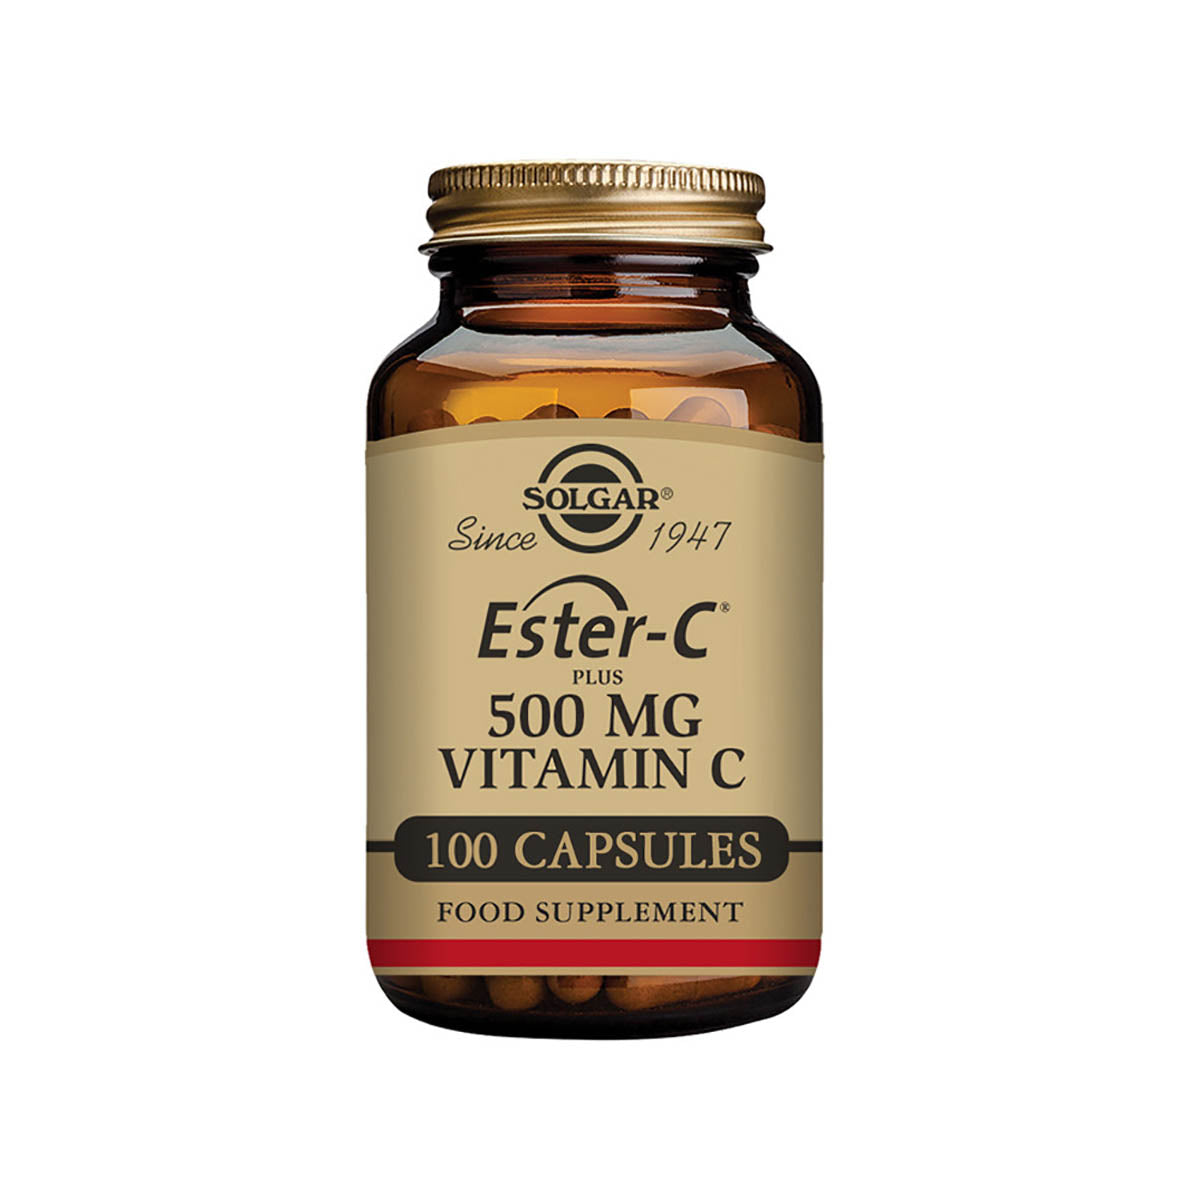 Solgar® Ester-C Plus 500 mg Vitamin C Vegetable Capsules - Pack of 100